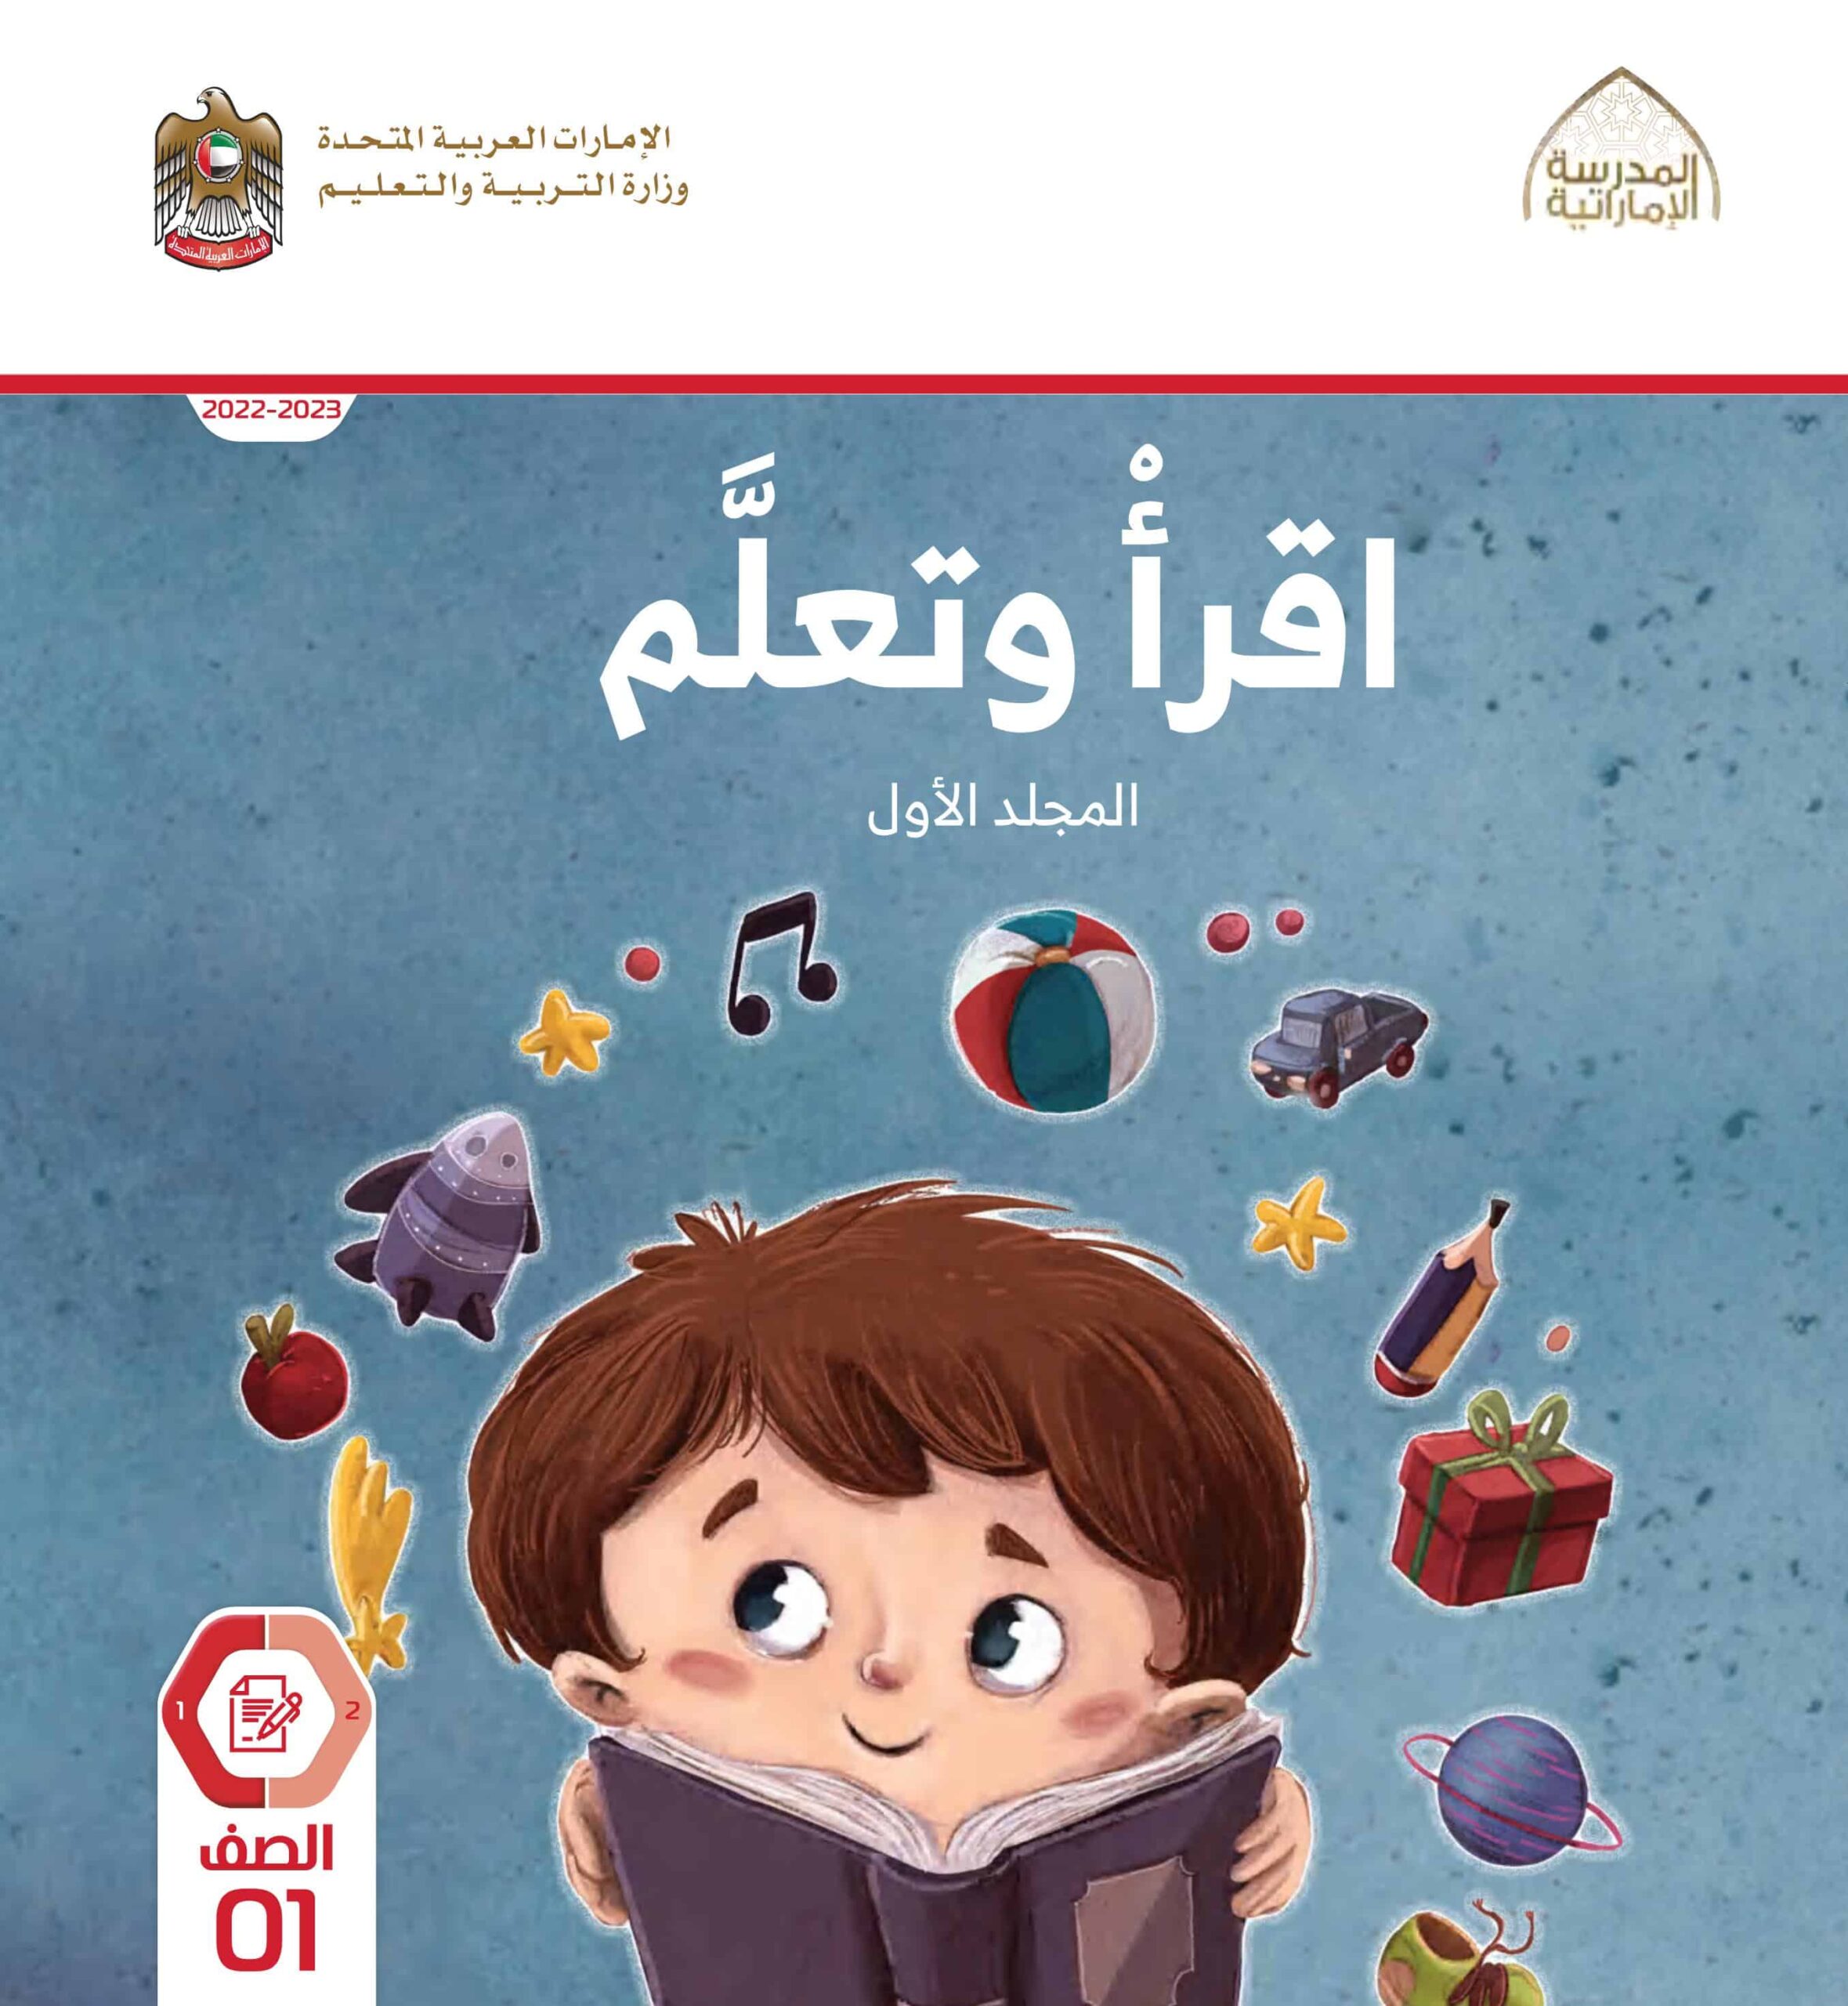 كتاب أقرأ وتعلم المجلد الأول اللغة العربية الصف الأول الفصل الدراسي الأول 2022-2023